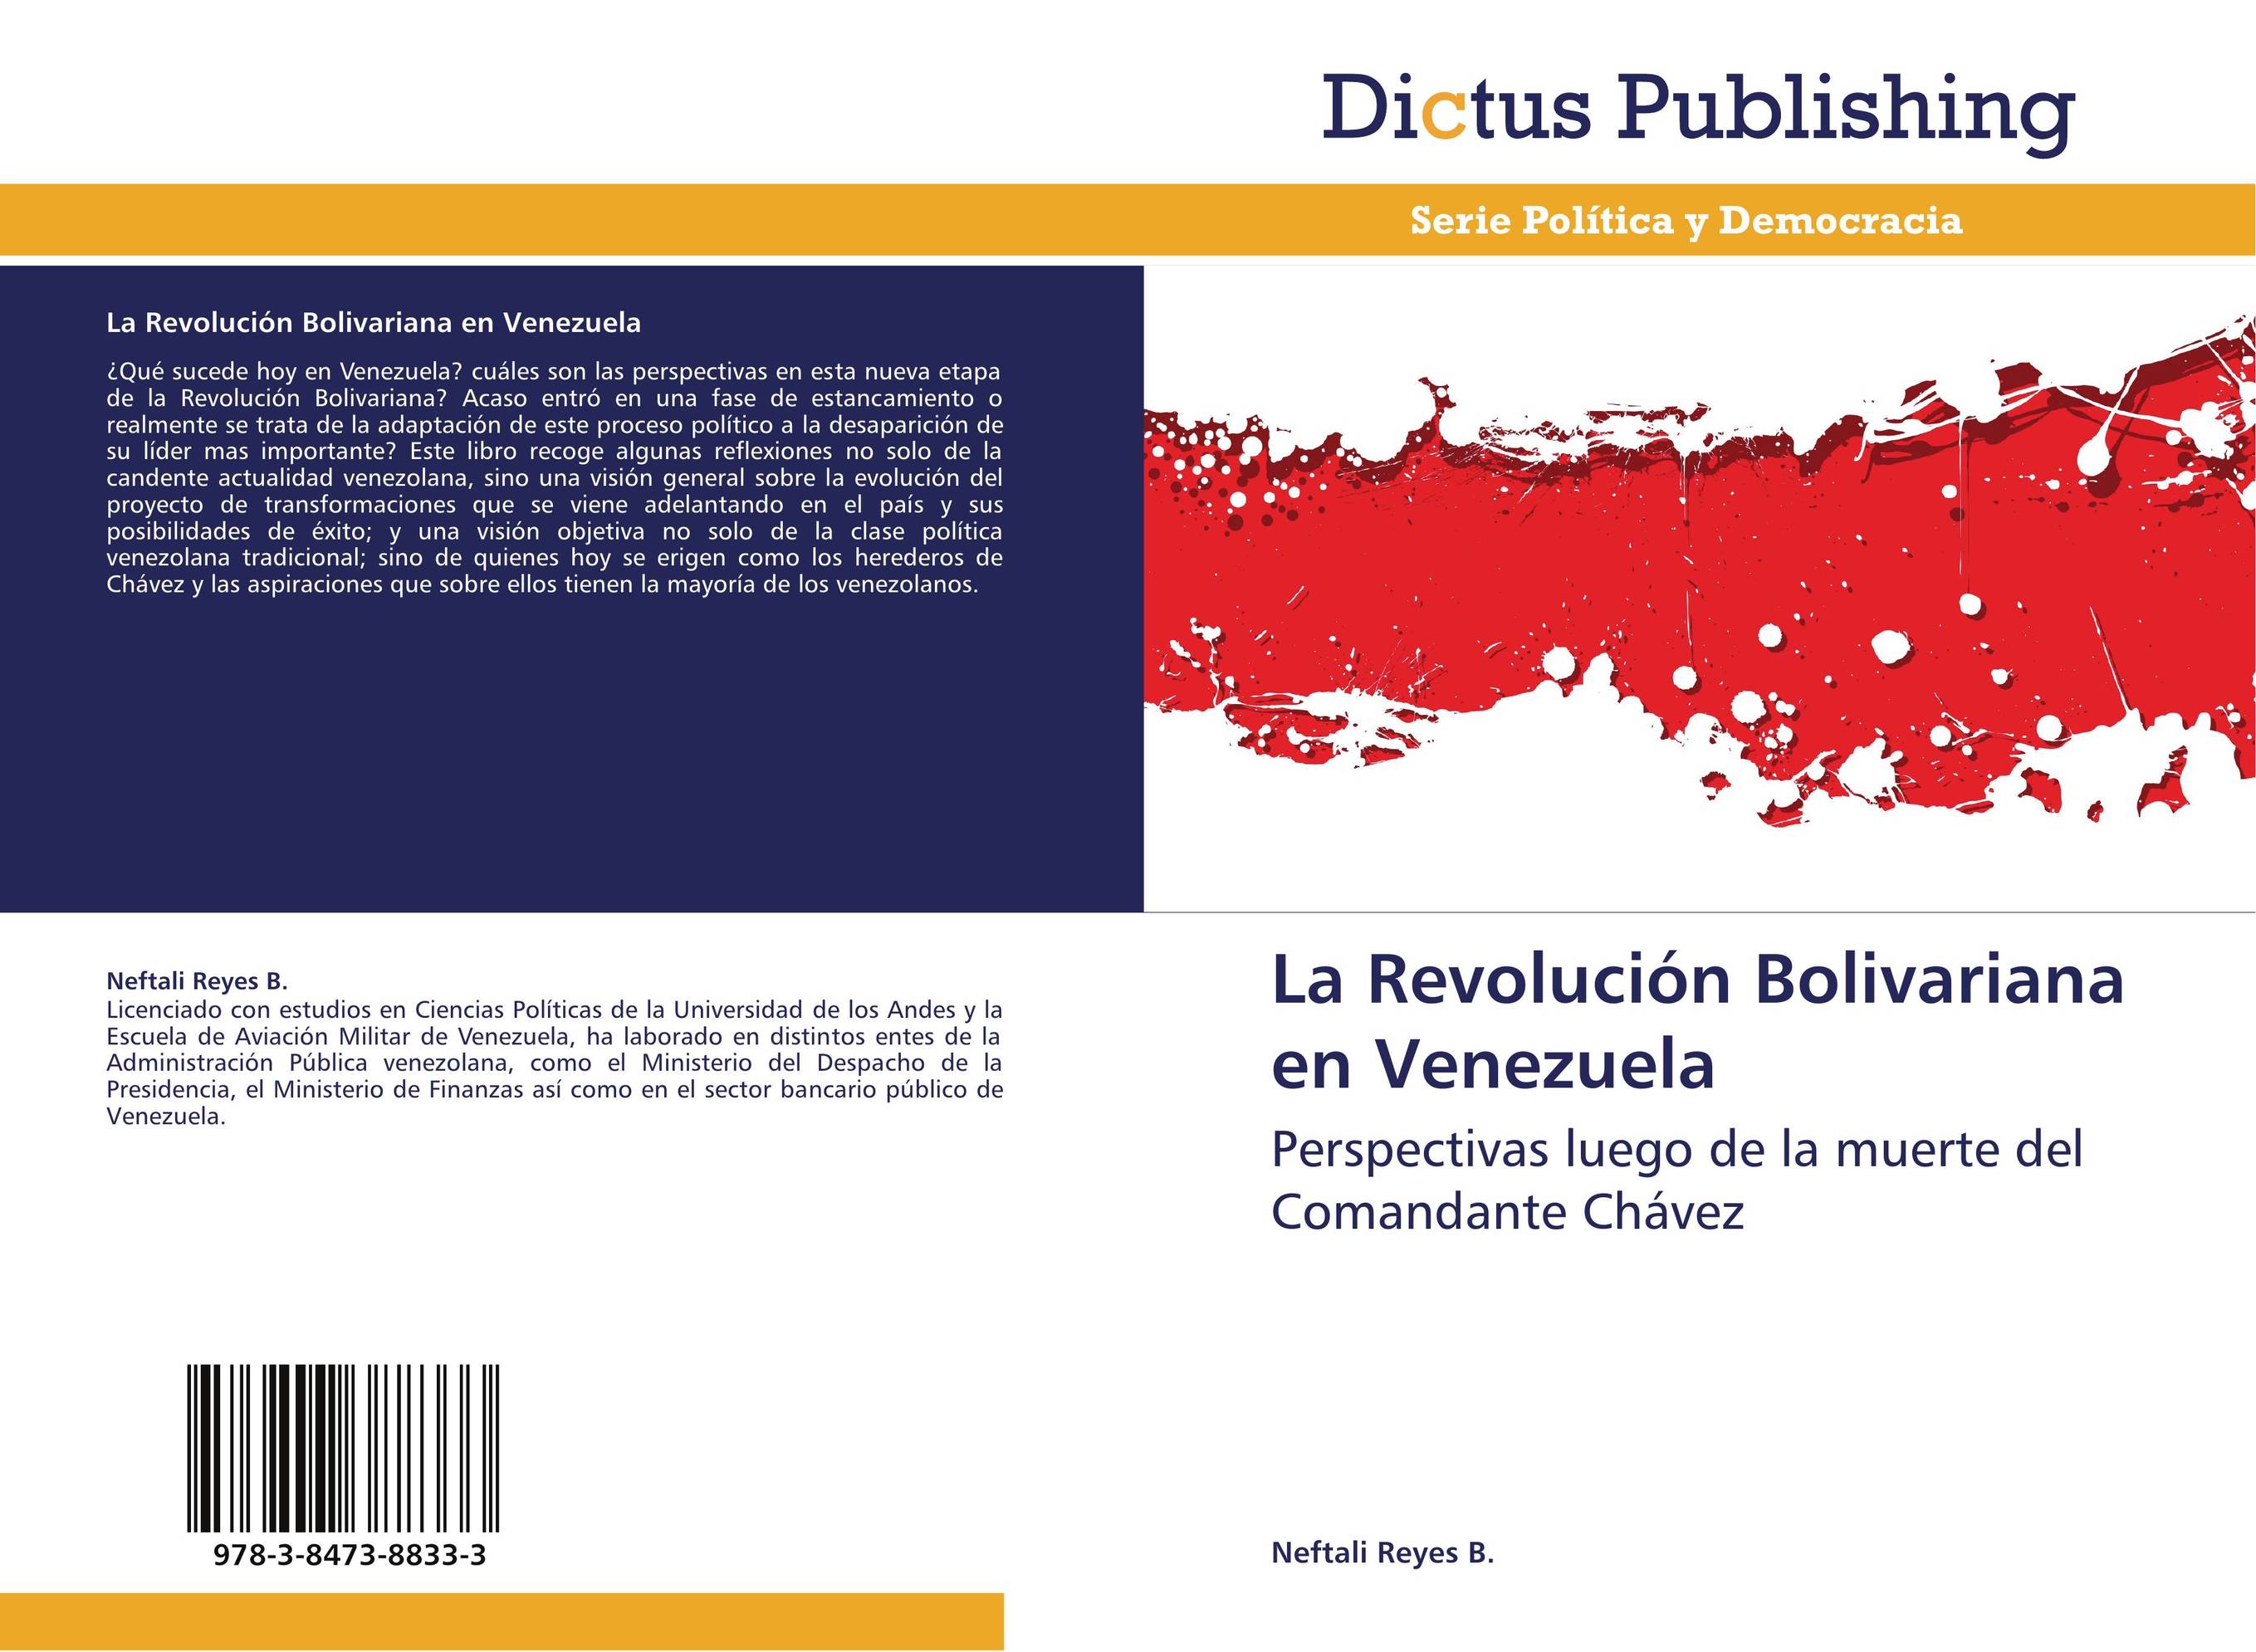 La Revolución Bolivariana en Venezuela